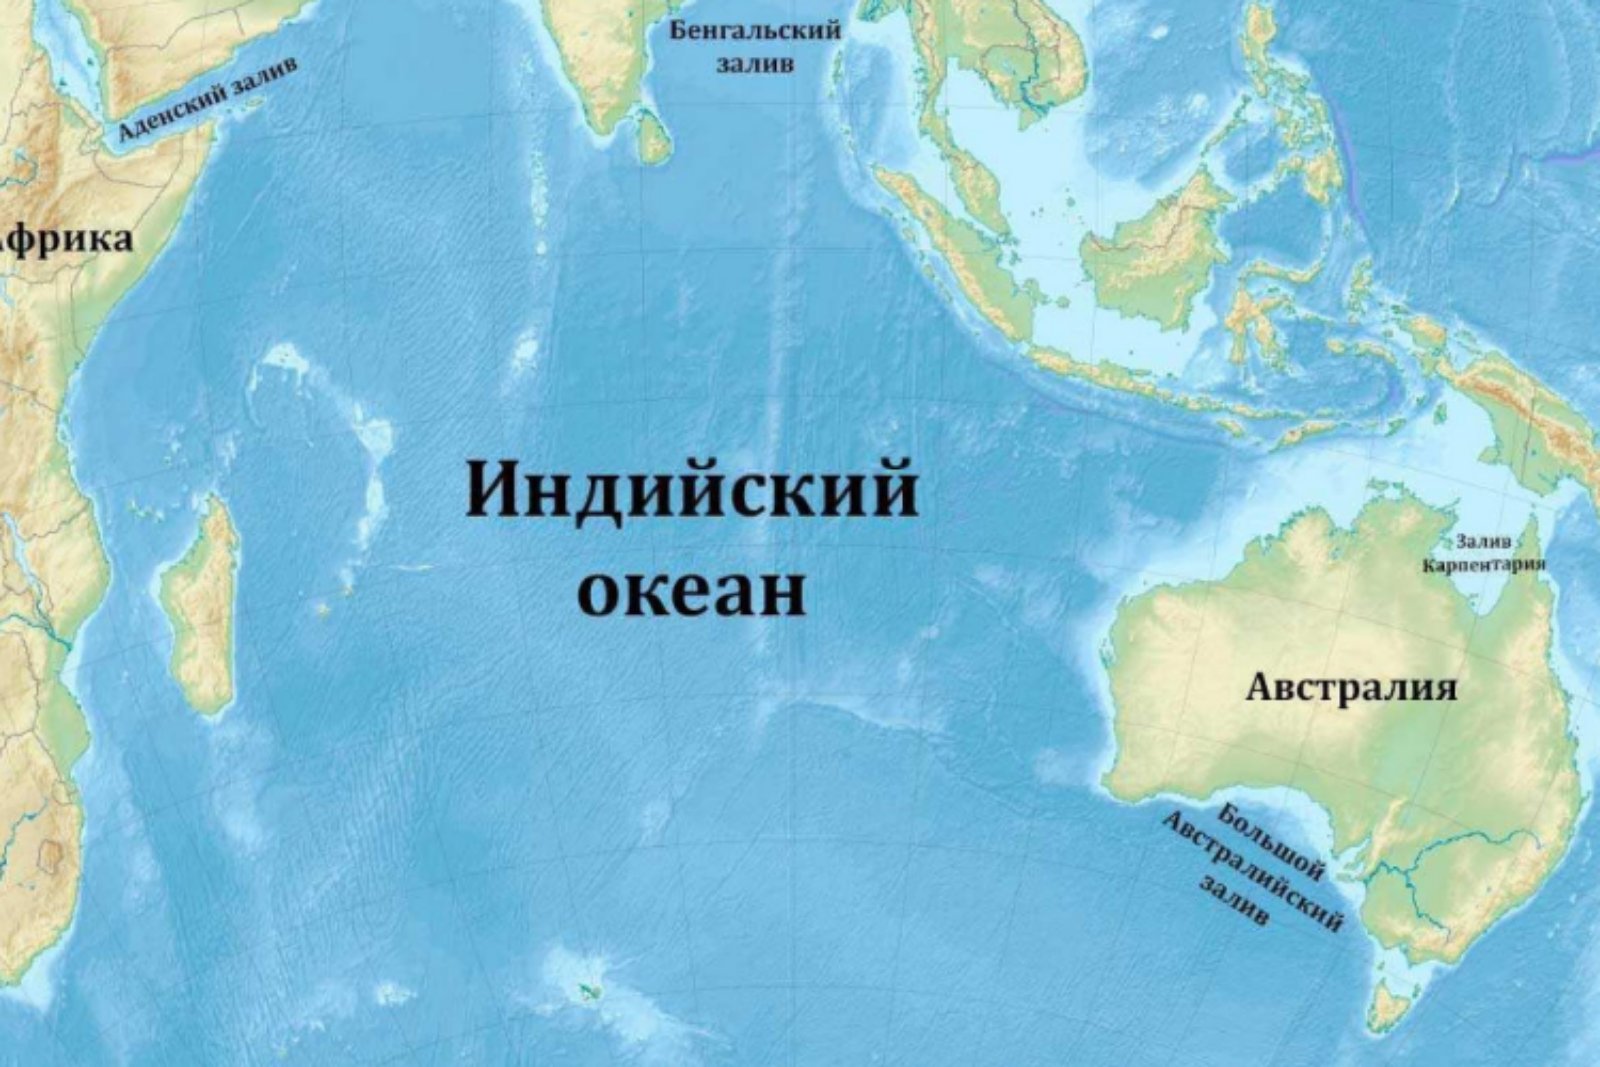 4 залива индийского океана. Оманский залив на карте индийского океана. Заливы и проливы индийского океана на карте. Индийский океан на карте. Кварта индийского океана.